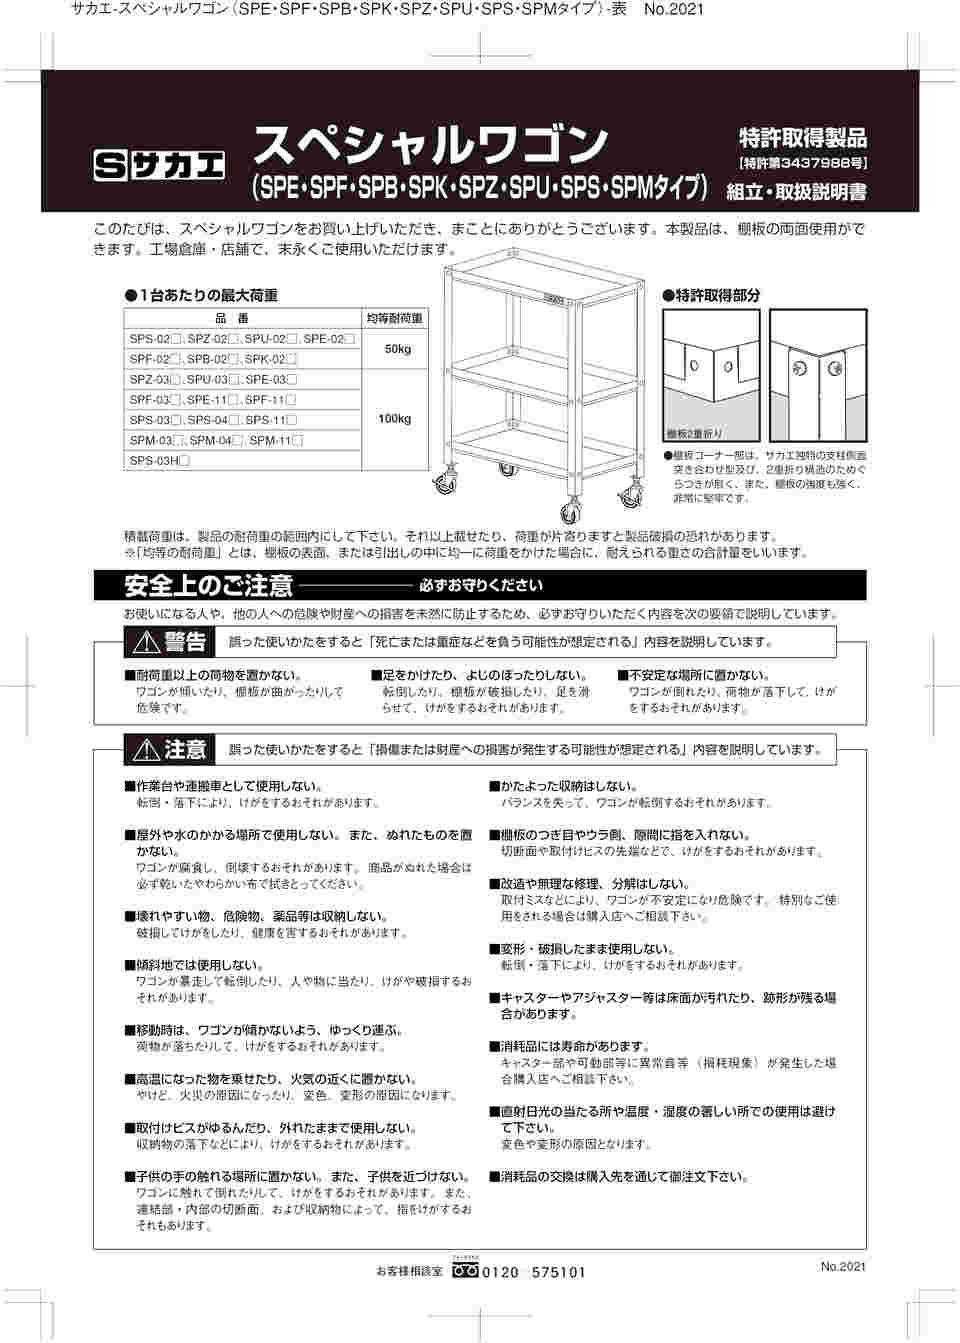 61-9784-26 スペシャルワゴン SPSタイプ SPS-02 【AXEL】 アズワン